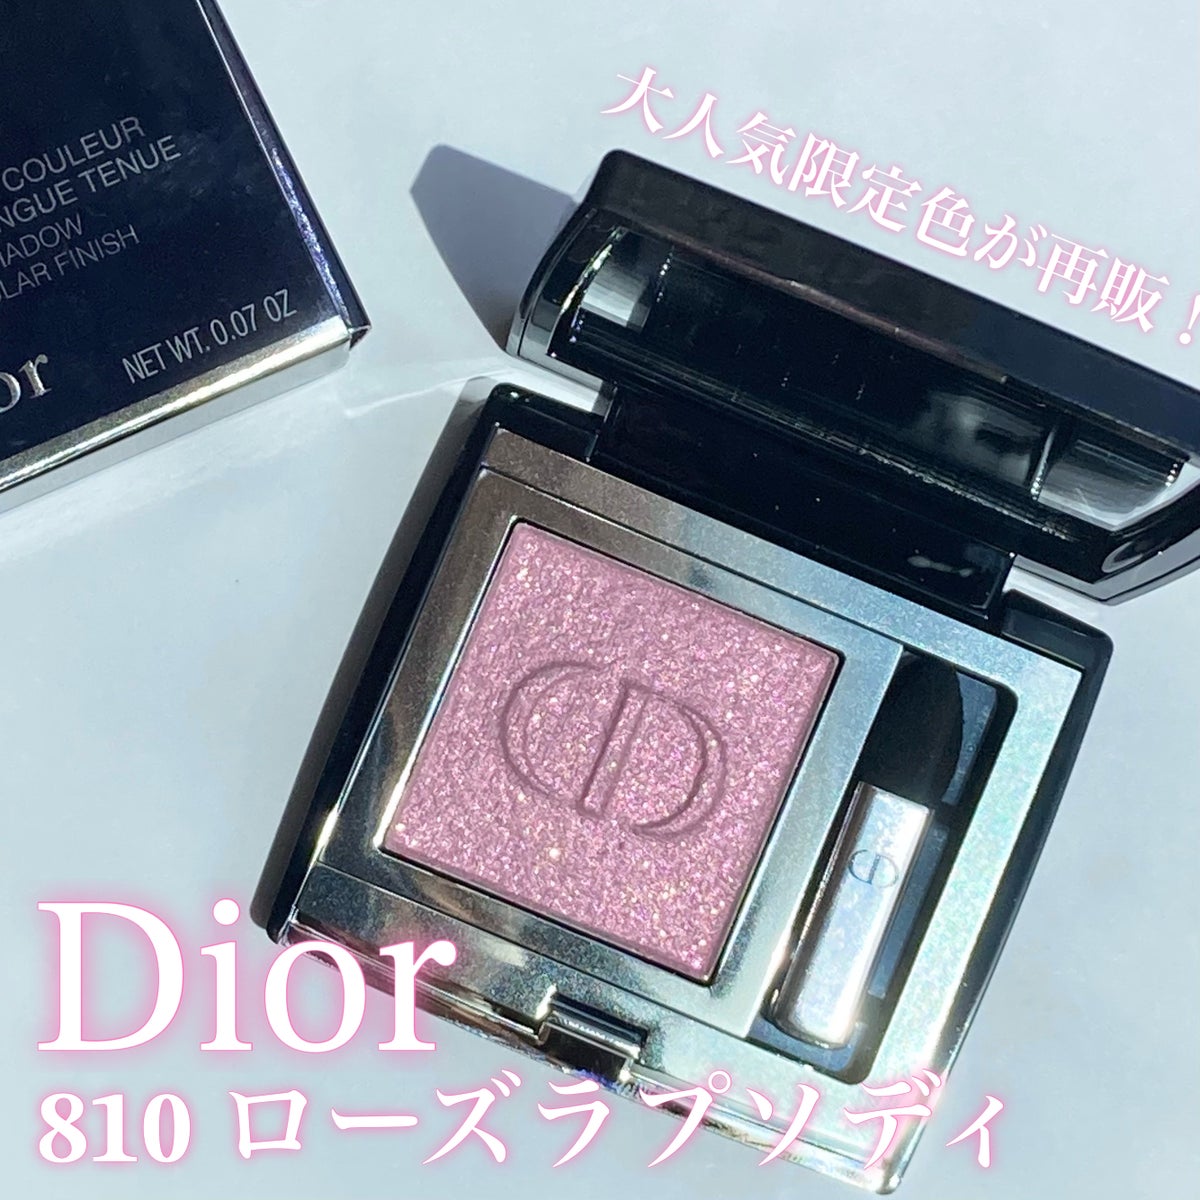 Dior モノクルールクチュール810 ローズラプソディー アイシャドウ